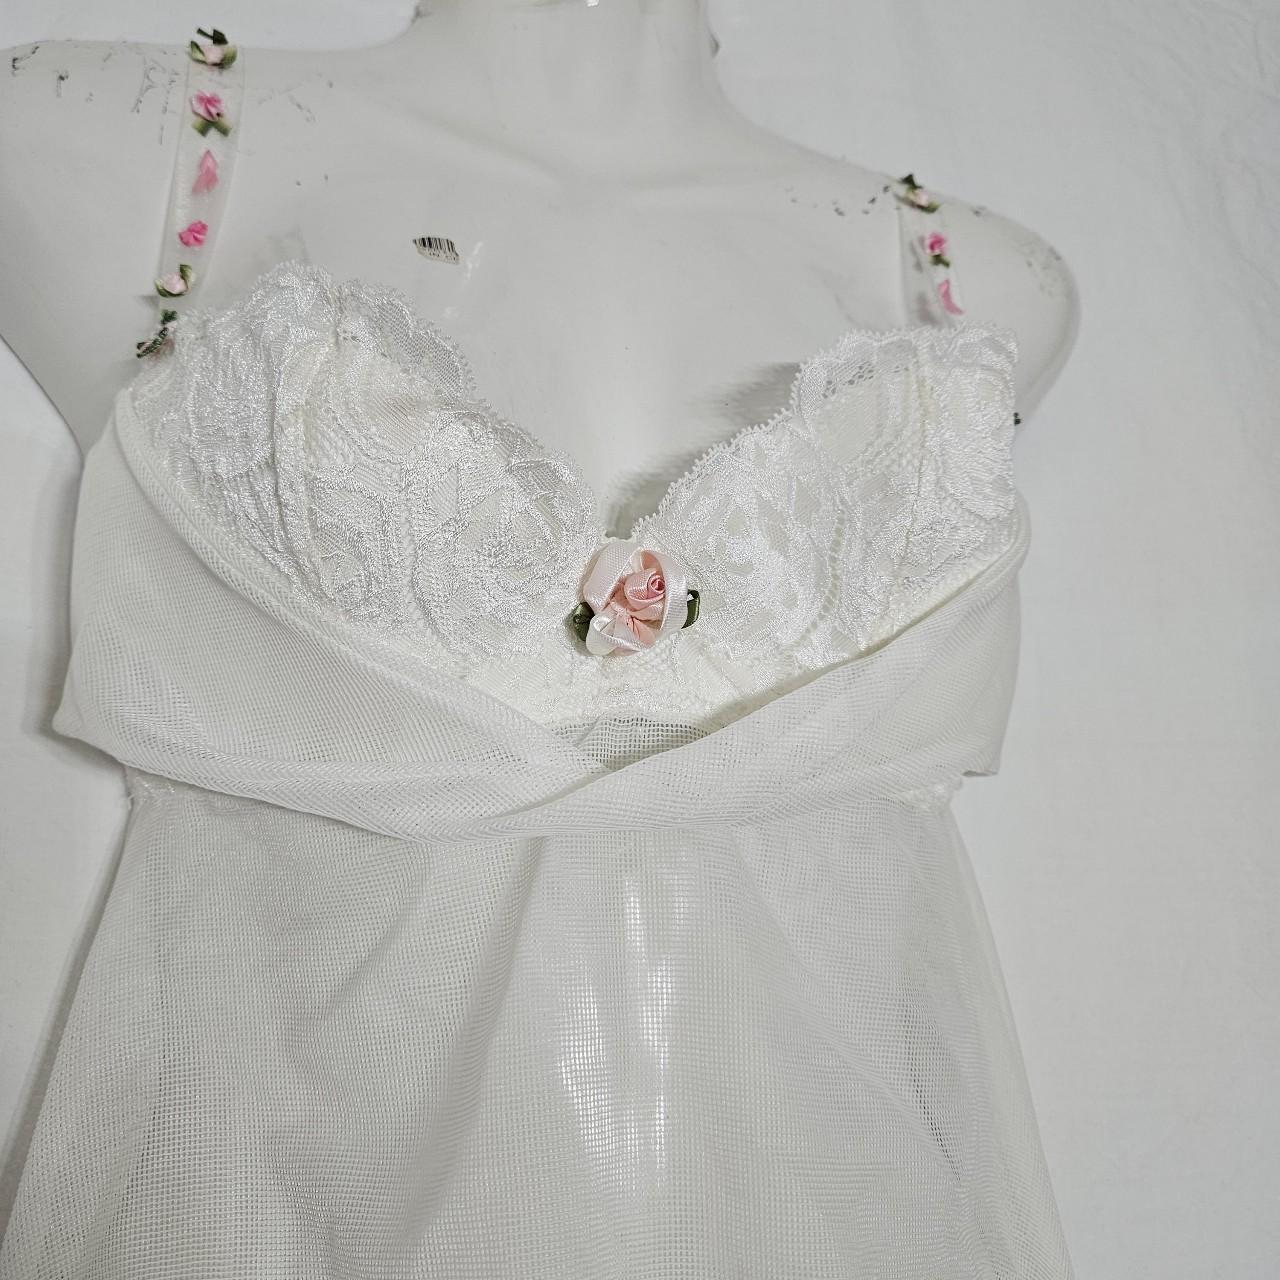 Chantal Thomass Women's Dress (5)